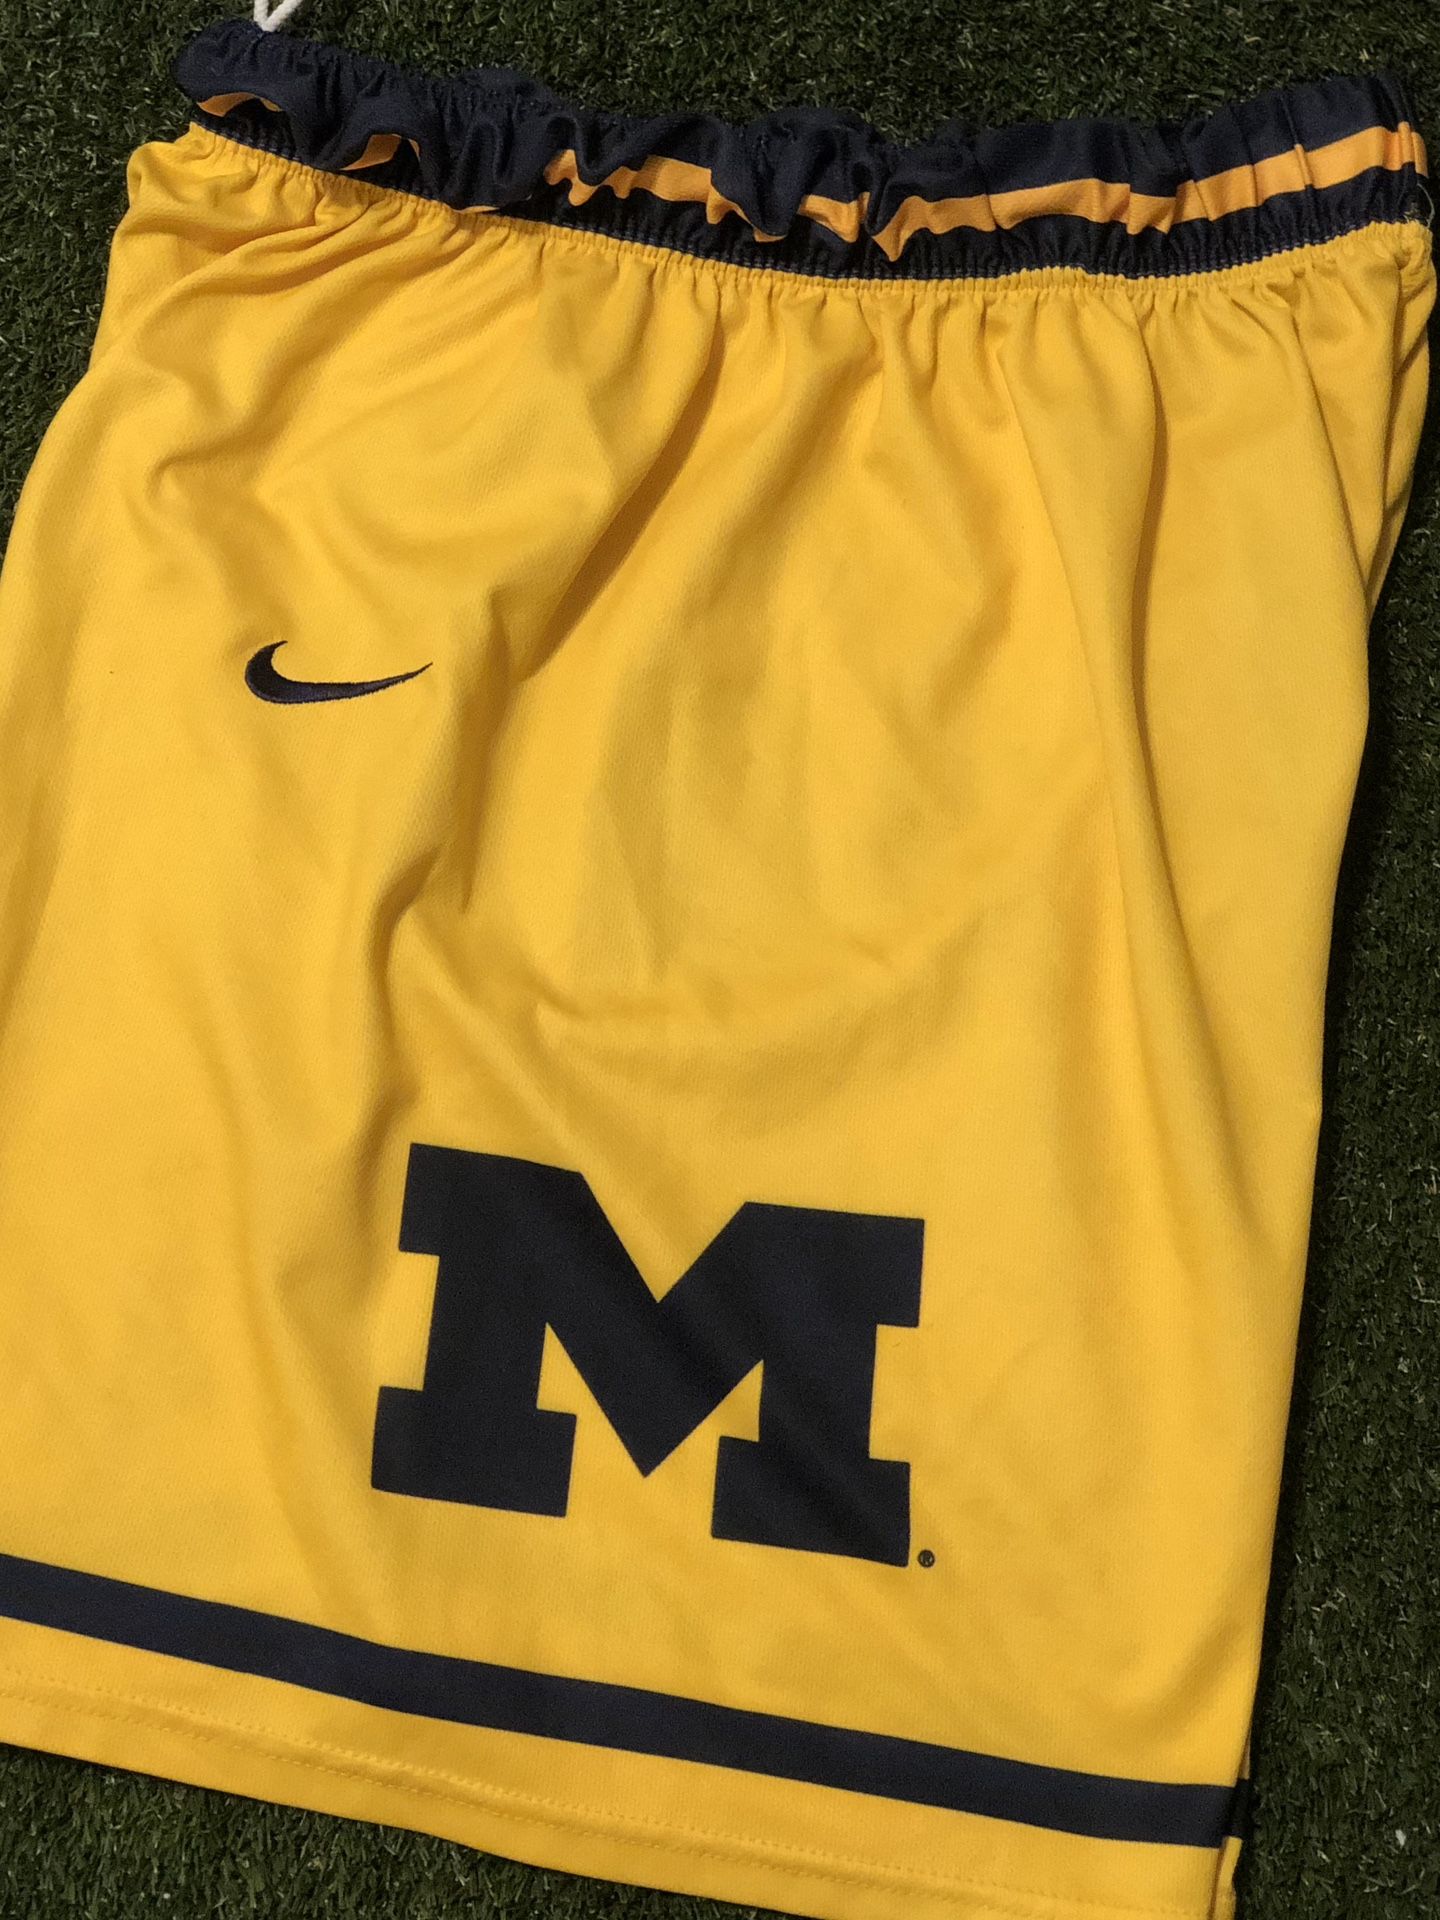 Vintage Nike Michigan “Fab 5” Shorts (Large)